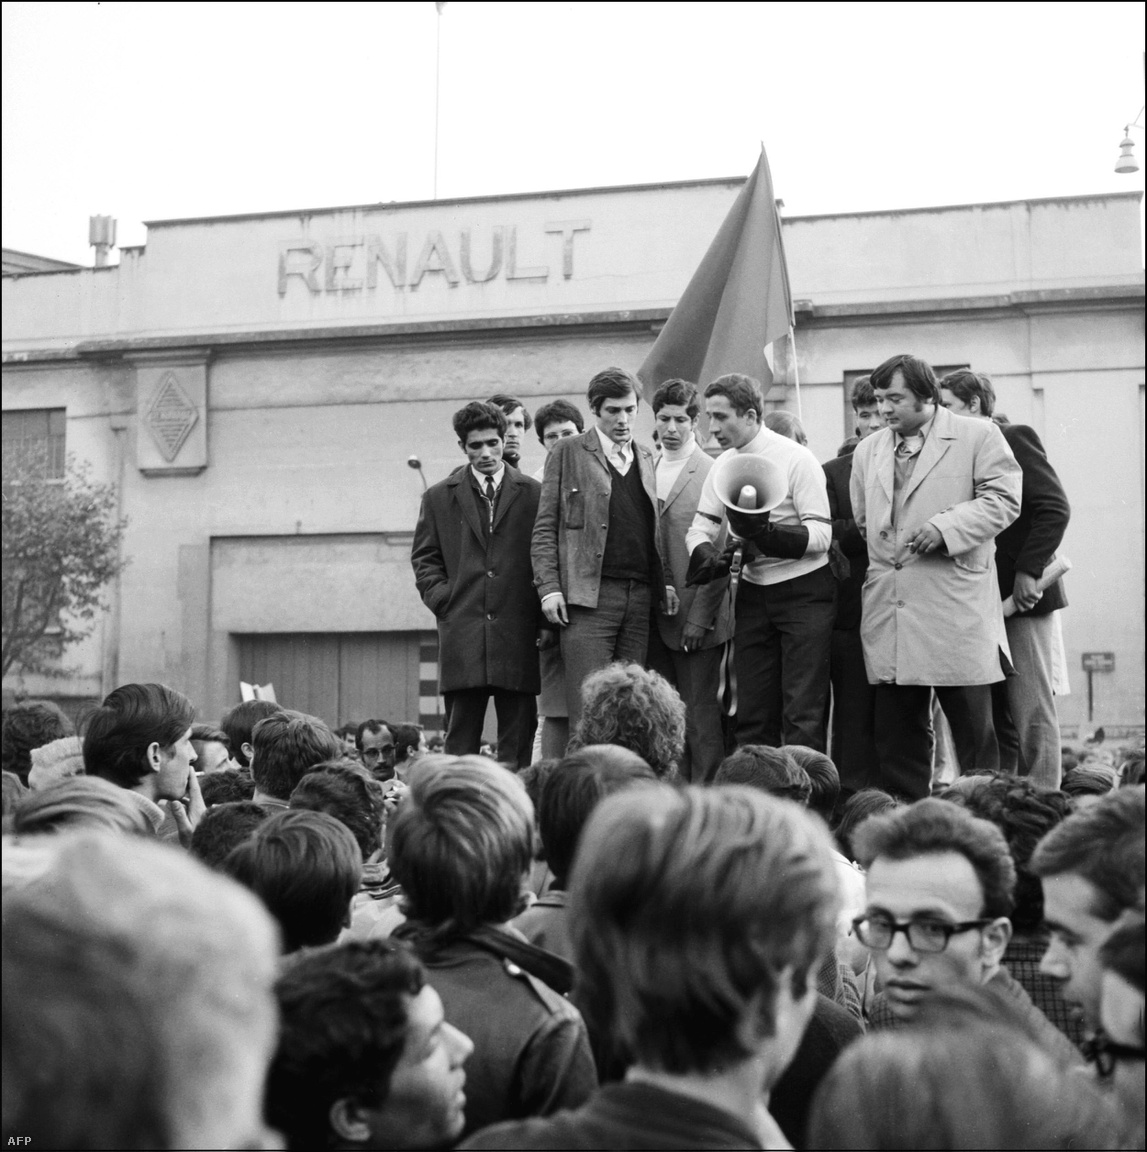 De össztársadalmilag a gyárfoglalások voltak döntők; a munkásosztály megmozdulása a diákokéval szemben valóban létében fenyegette a rendszert. A francia történelem legnagyobb általános sztrájkjában 9 millióan vettek részt, ez, és az egymilliós utcai tüntetés megrengette de Gaulle hatalmát. Nem is csak az övét: a munkásokra a kritikák szerint rátelepedett régi szakszervezetekét is; 1968 lázadása annyiban is az újbaloldal születése, hogy a hagyományos munkásmozgalmi alakulatok, pártok és érdekvédelmi szervezetek képtelenek voltak uralni az eseményeket.